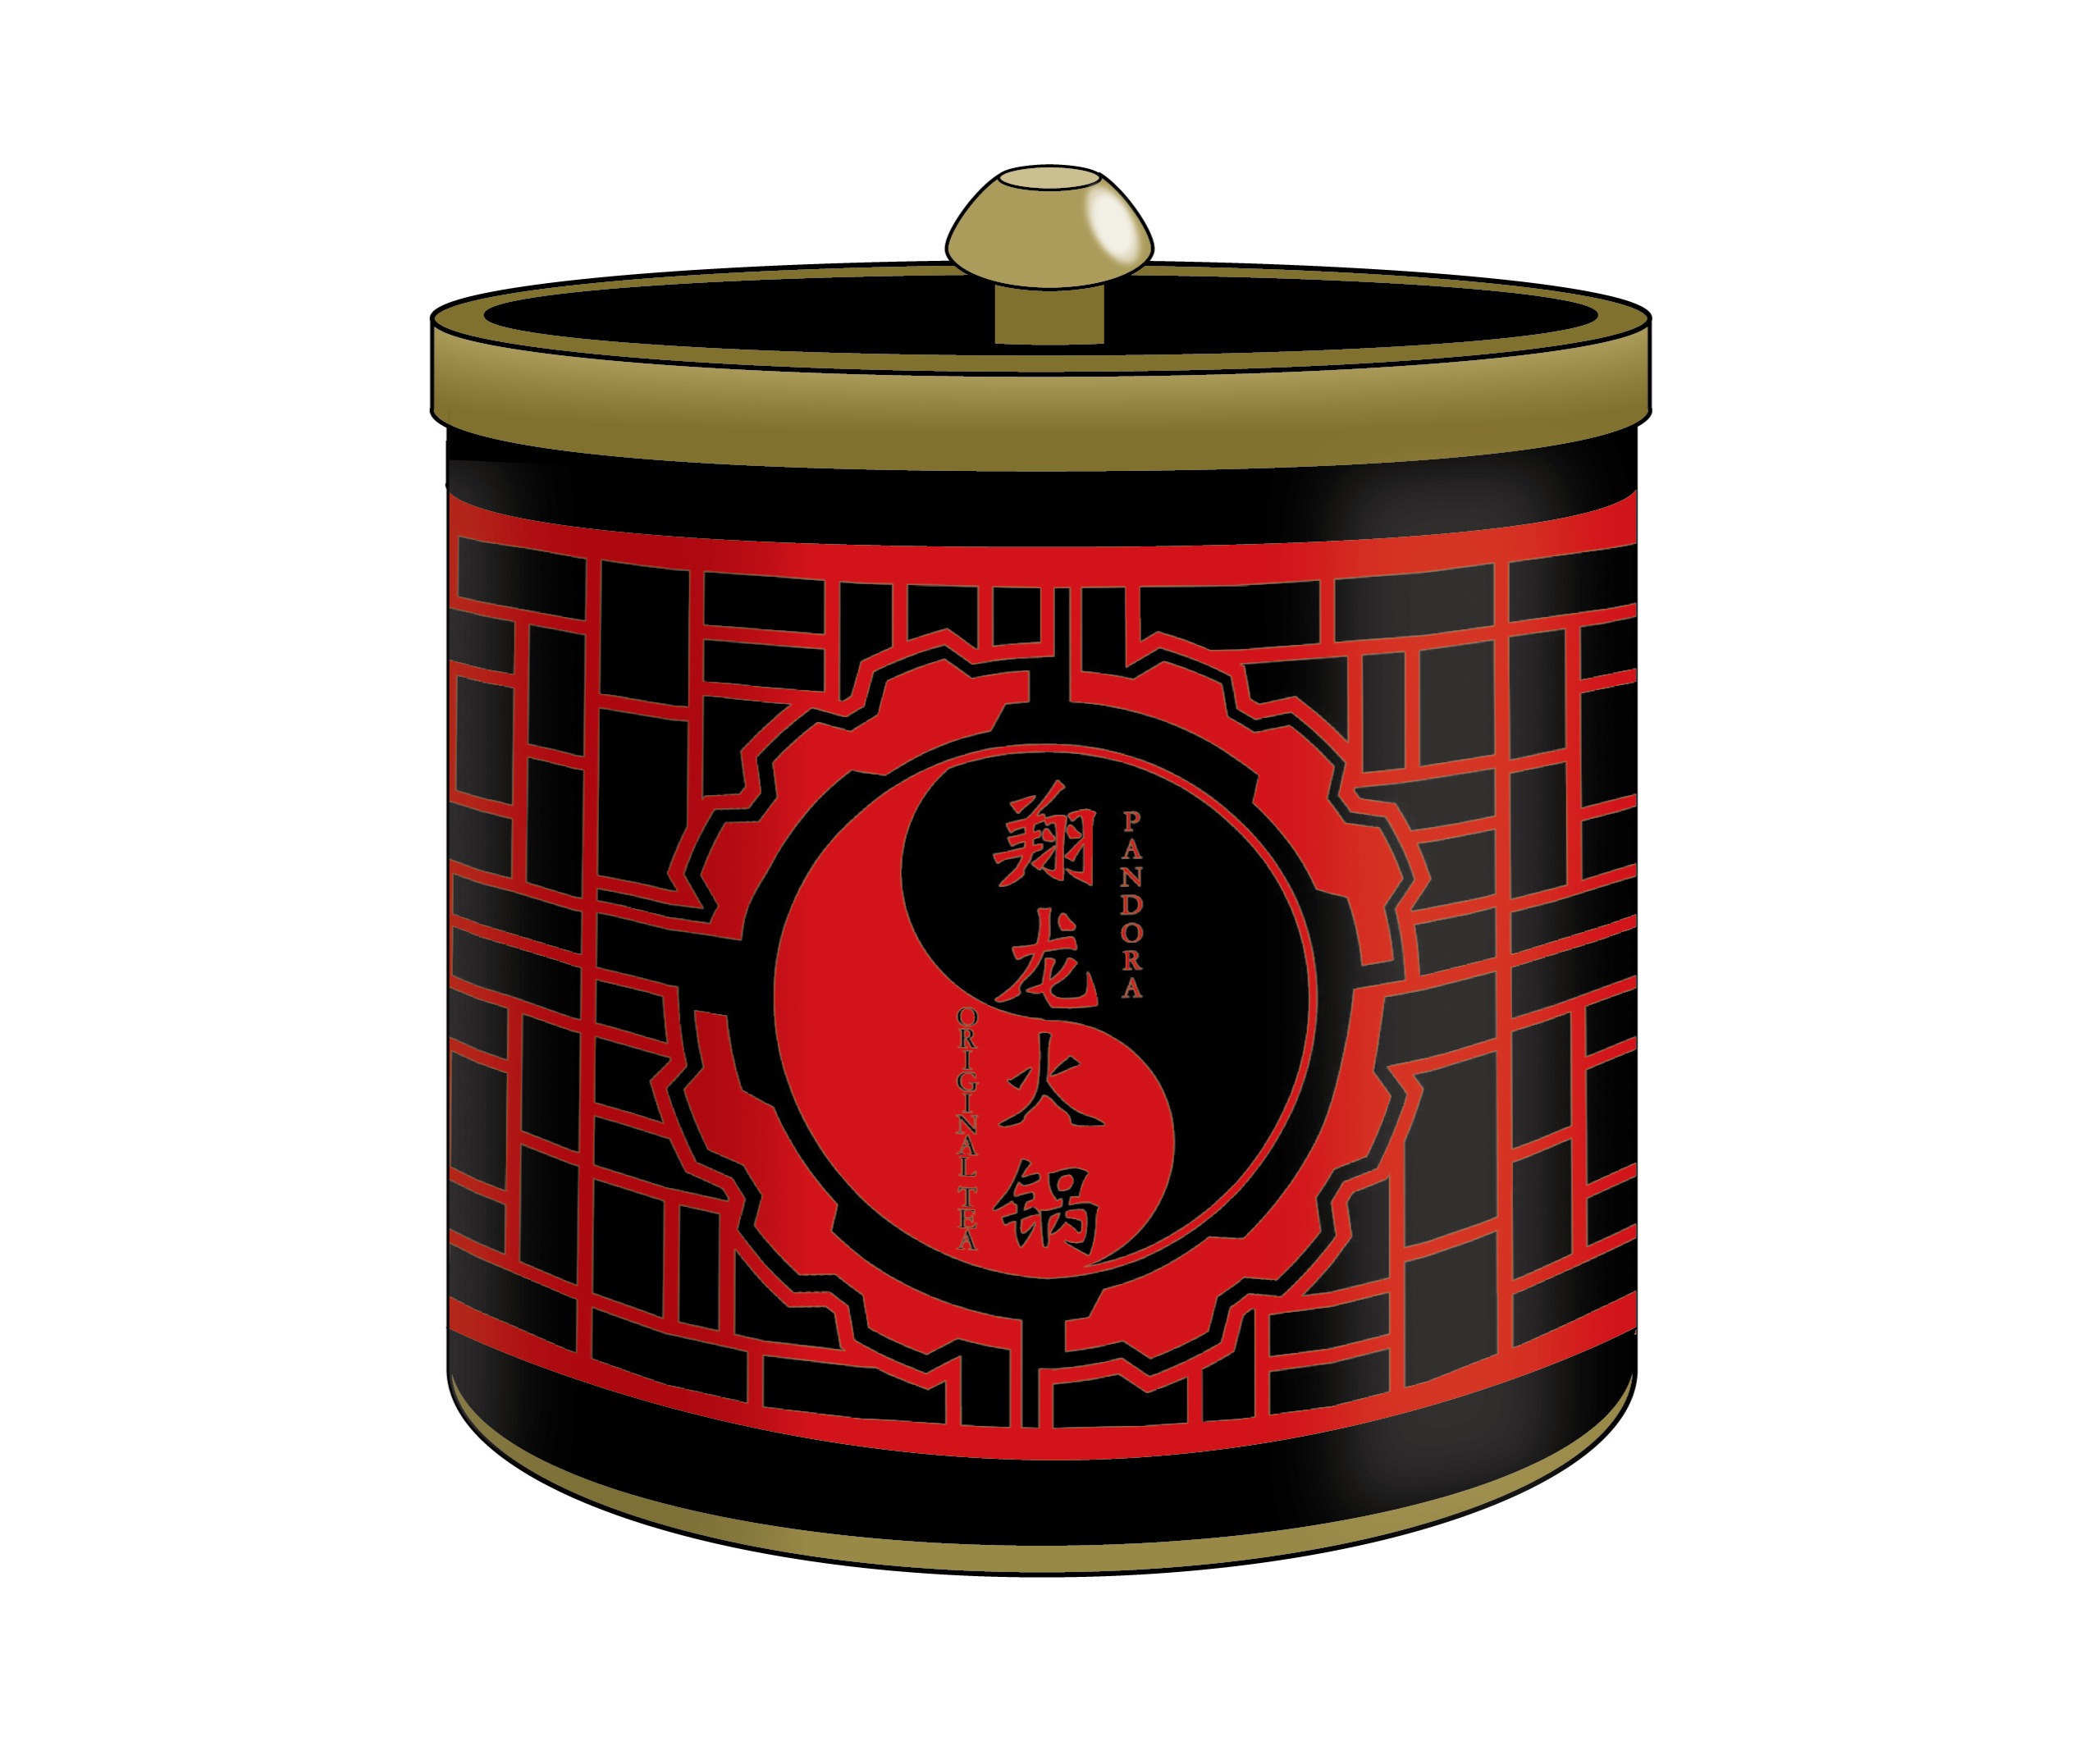 「翔龍火鍋」特製ウーロン茶トレーディング缶バッジ付き